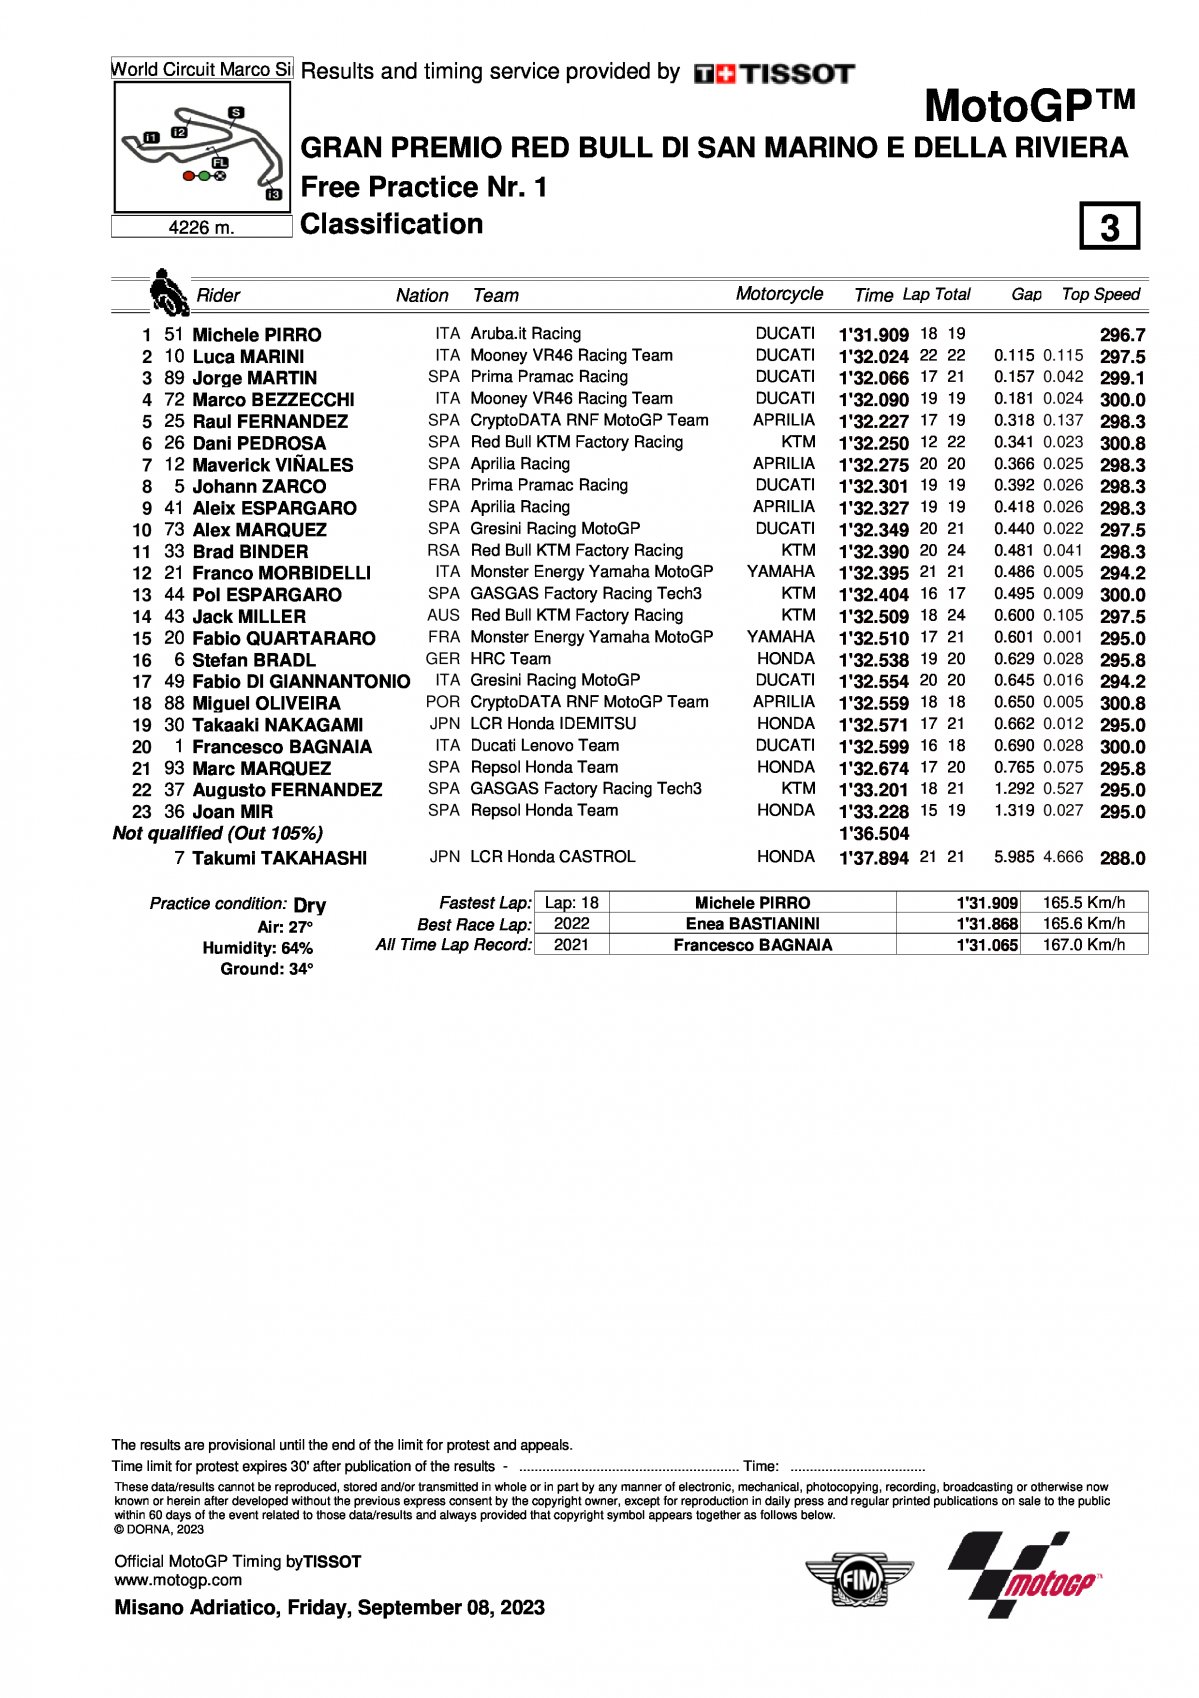 Результаты FP1 Гран-При Сан-Марино, MotoGP (8/09/2023)